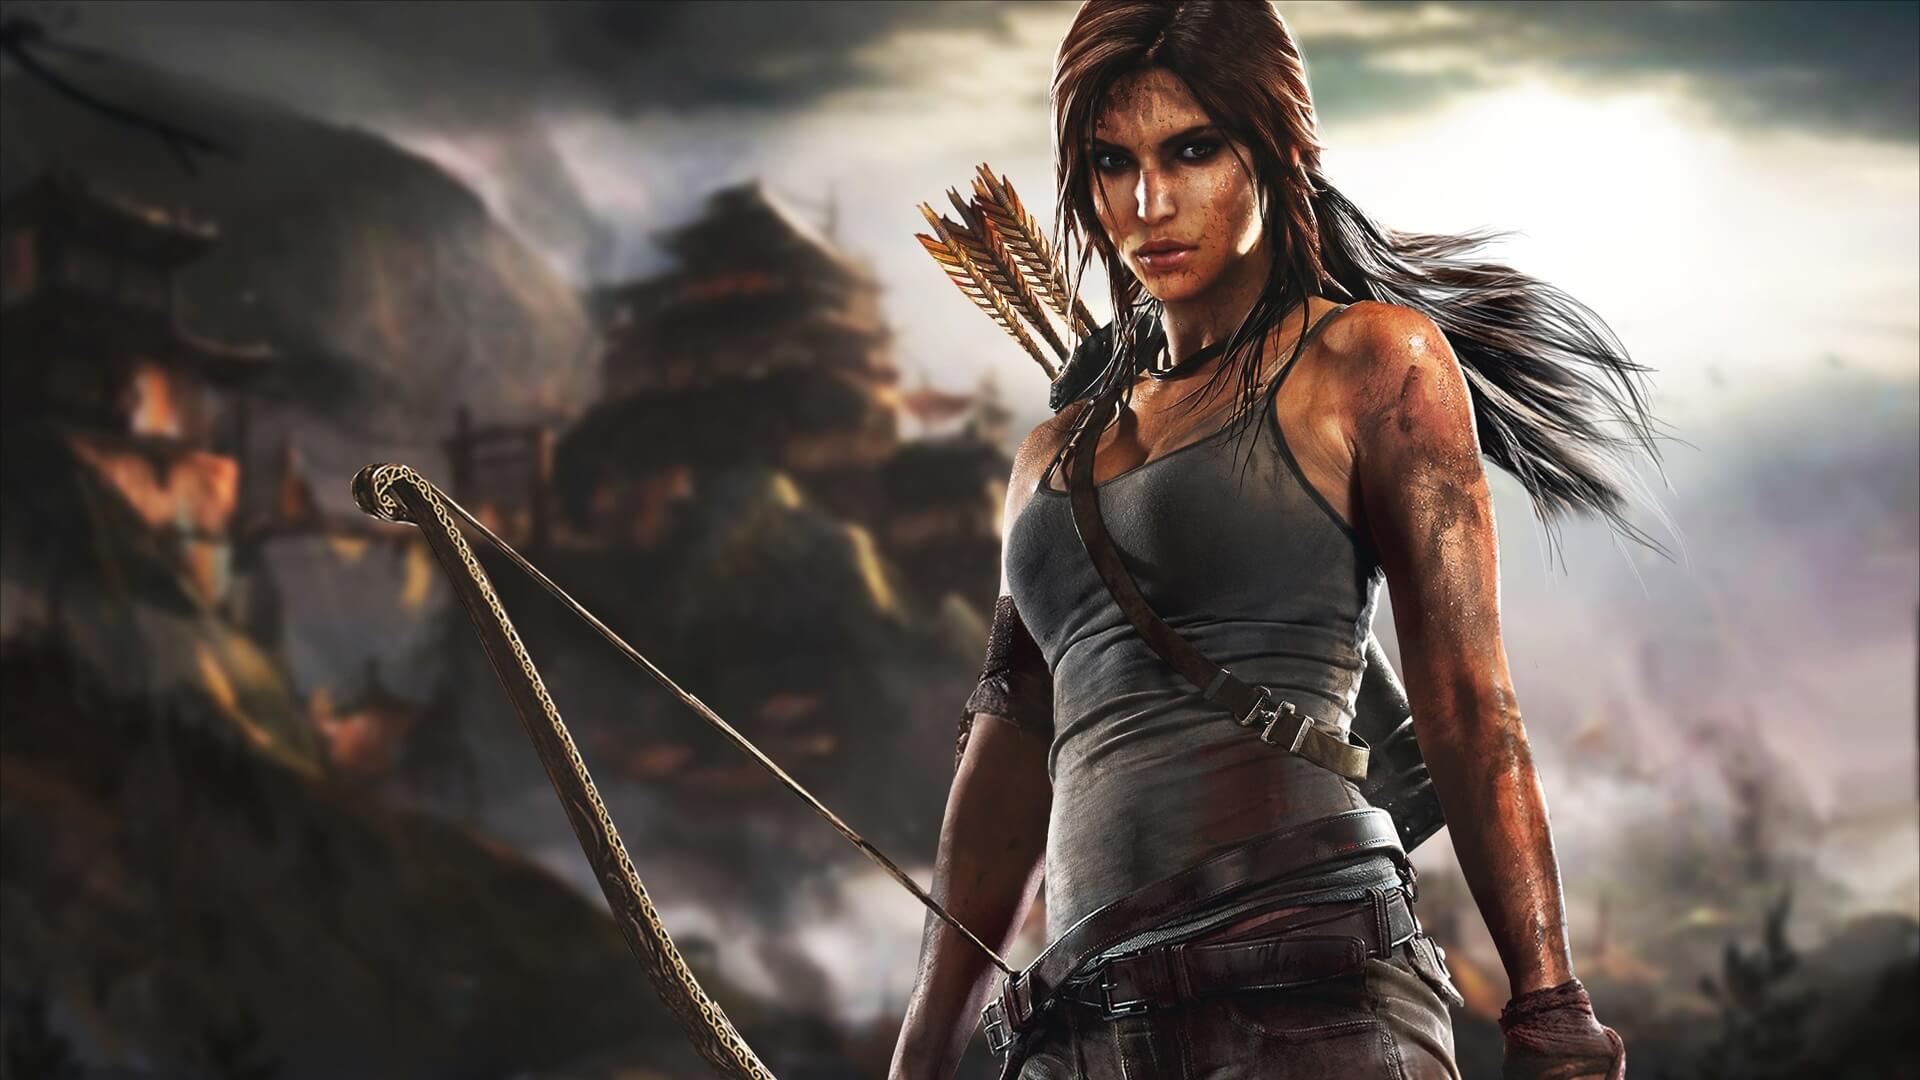 Tomb Raider: Huyền thoại bắt đầu – Bom tấn hành động mở màn năm 2018 của Warner Bros